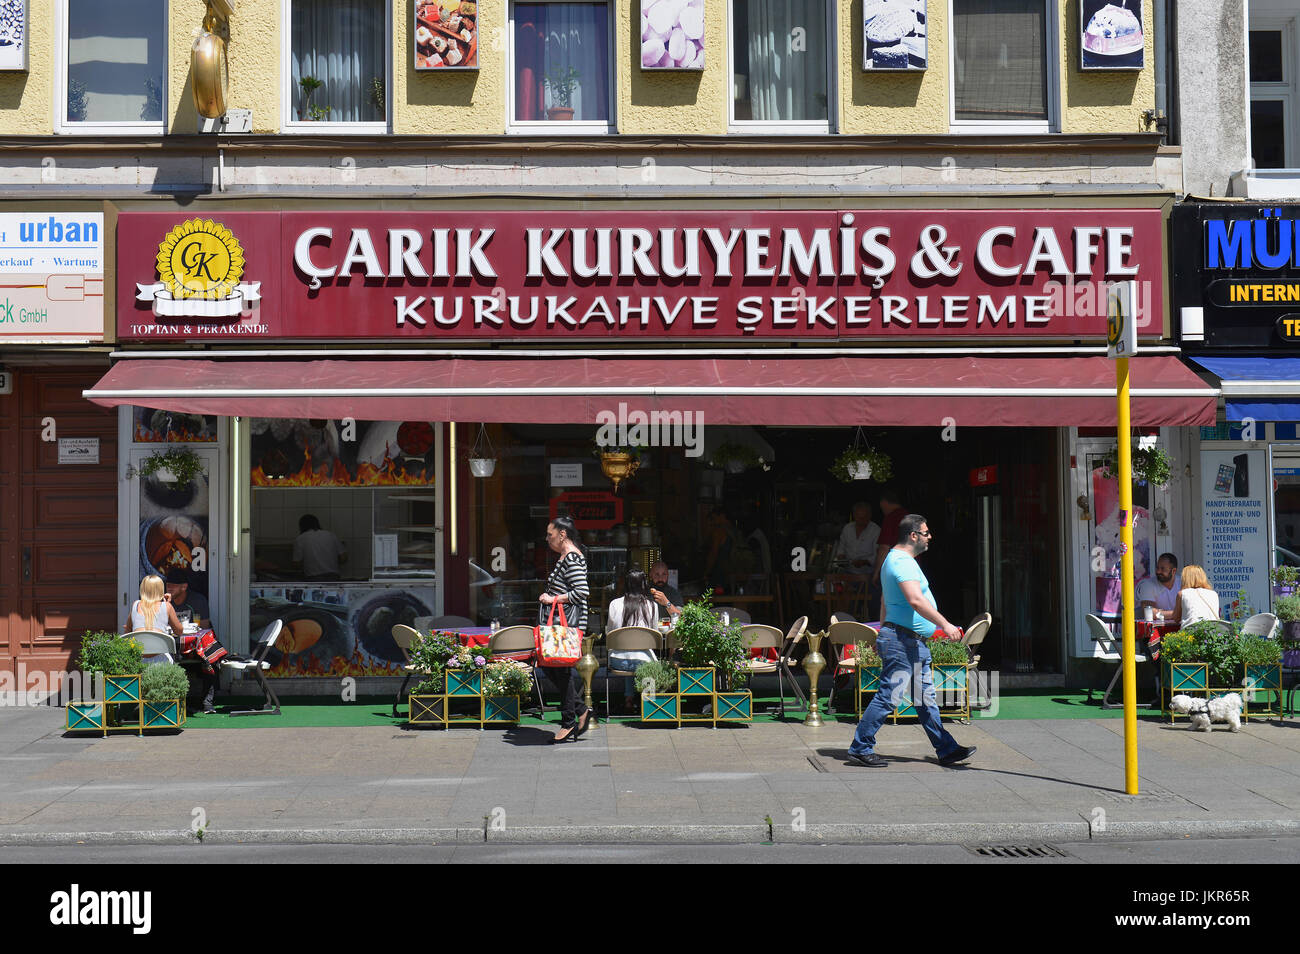 Turkish cafe, M?llerstrasse, Wedding, middle, Berlin, Germany, Tuerkisches Cafe, Muellerstrasse, Mitte, Deutschland Stock Photo